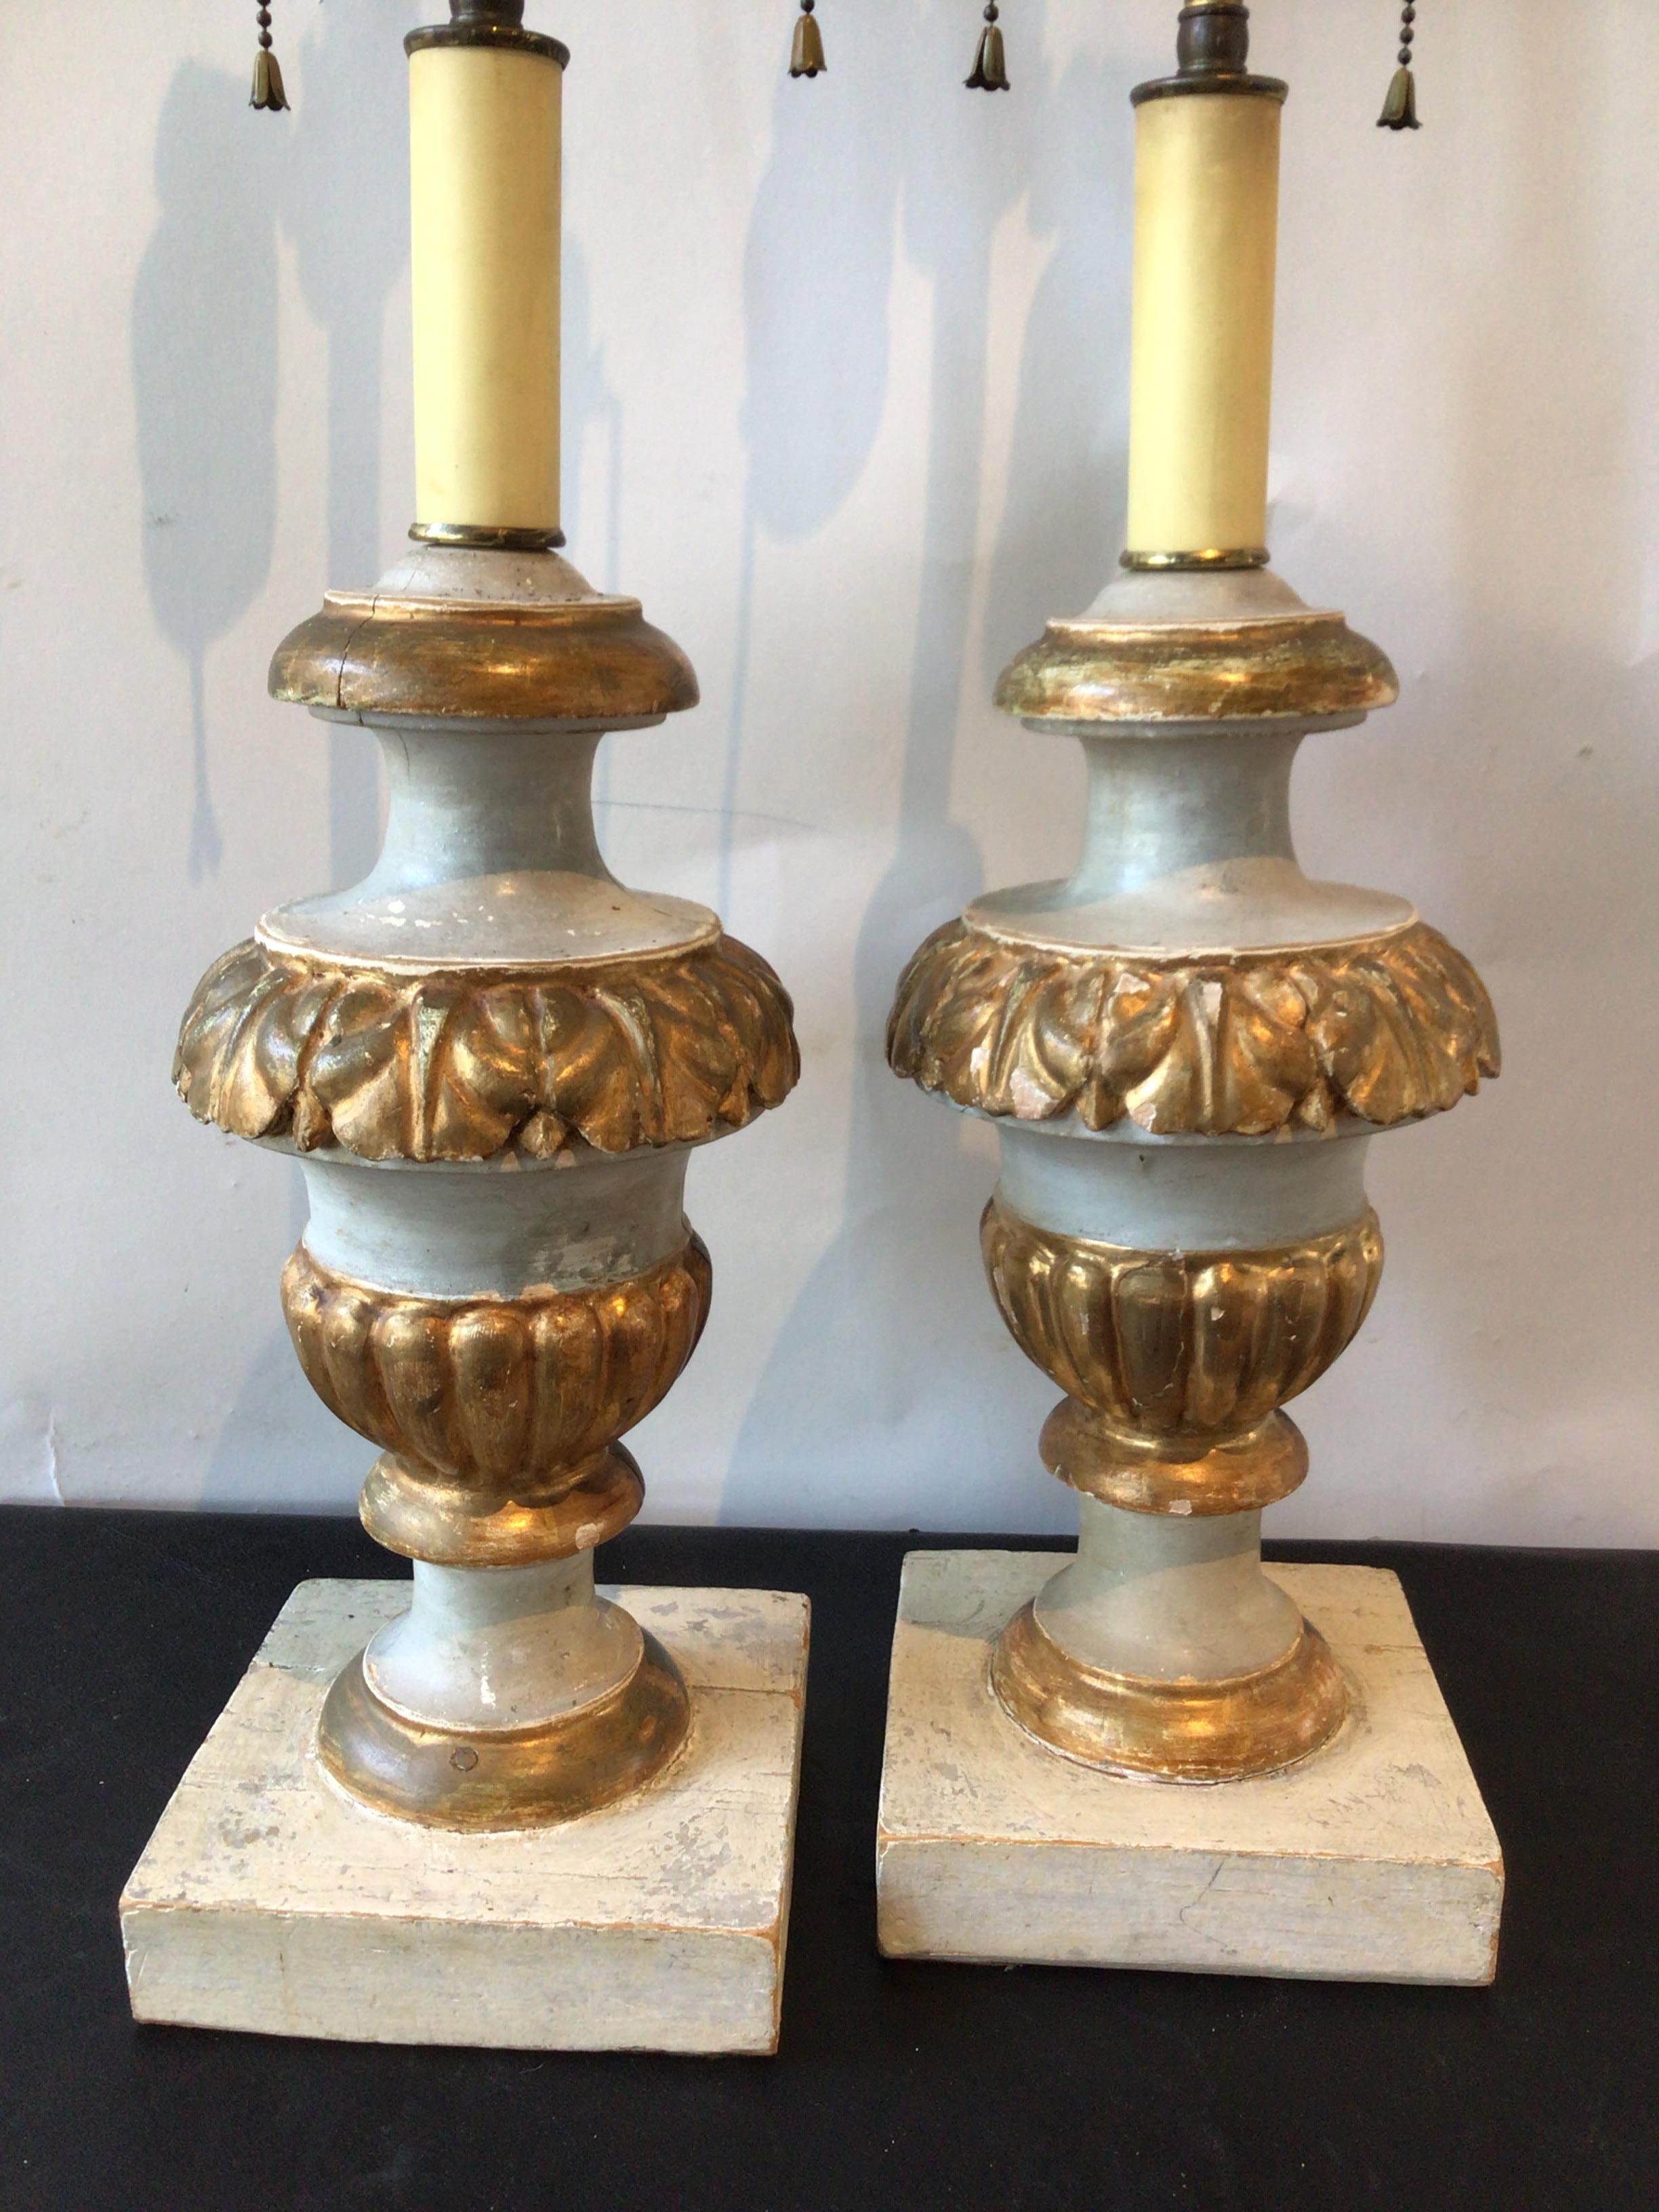 Paire de lampes italiennes des années 1850 en bois doré. Le bois est peint en gris clair.